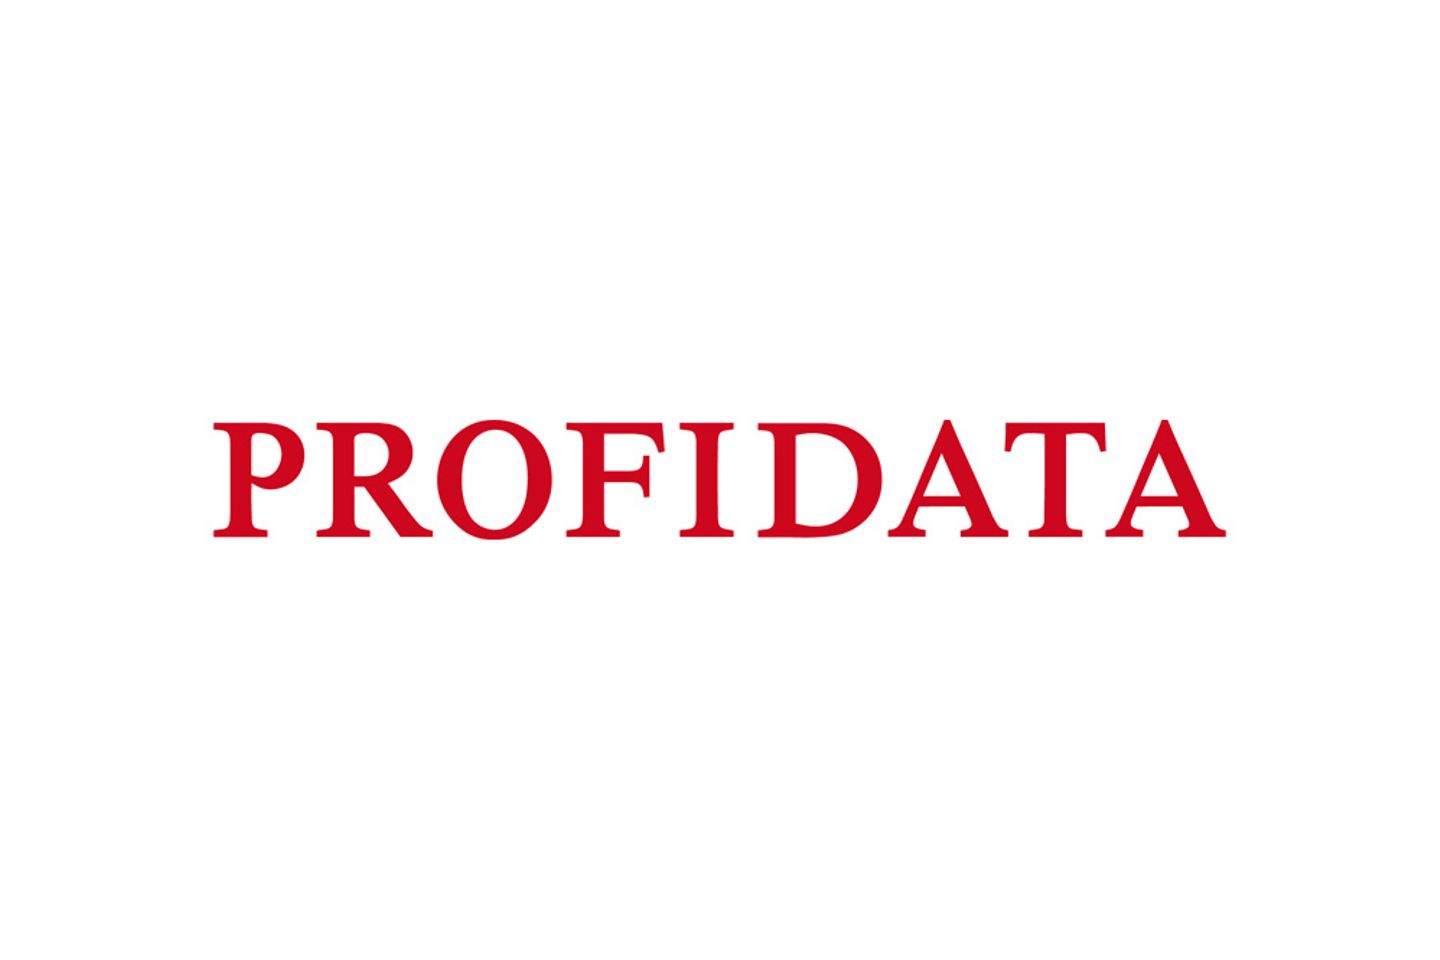 Logo of the Profidata group 